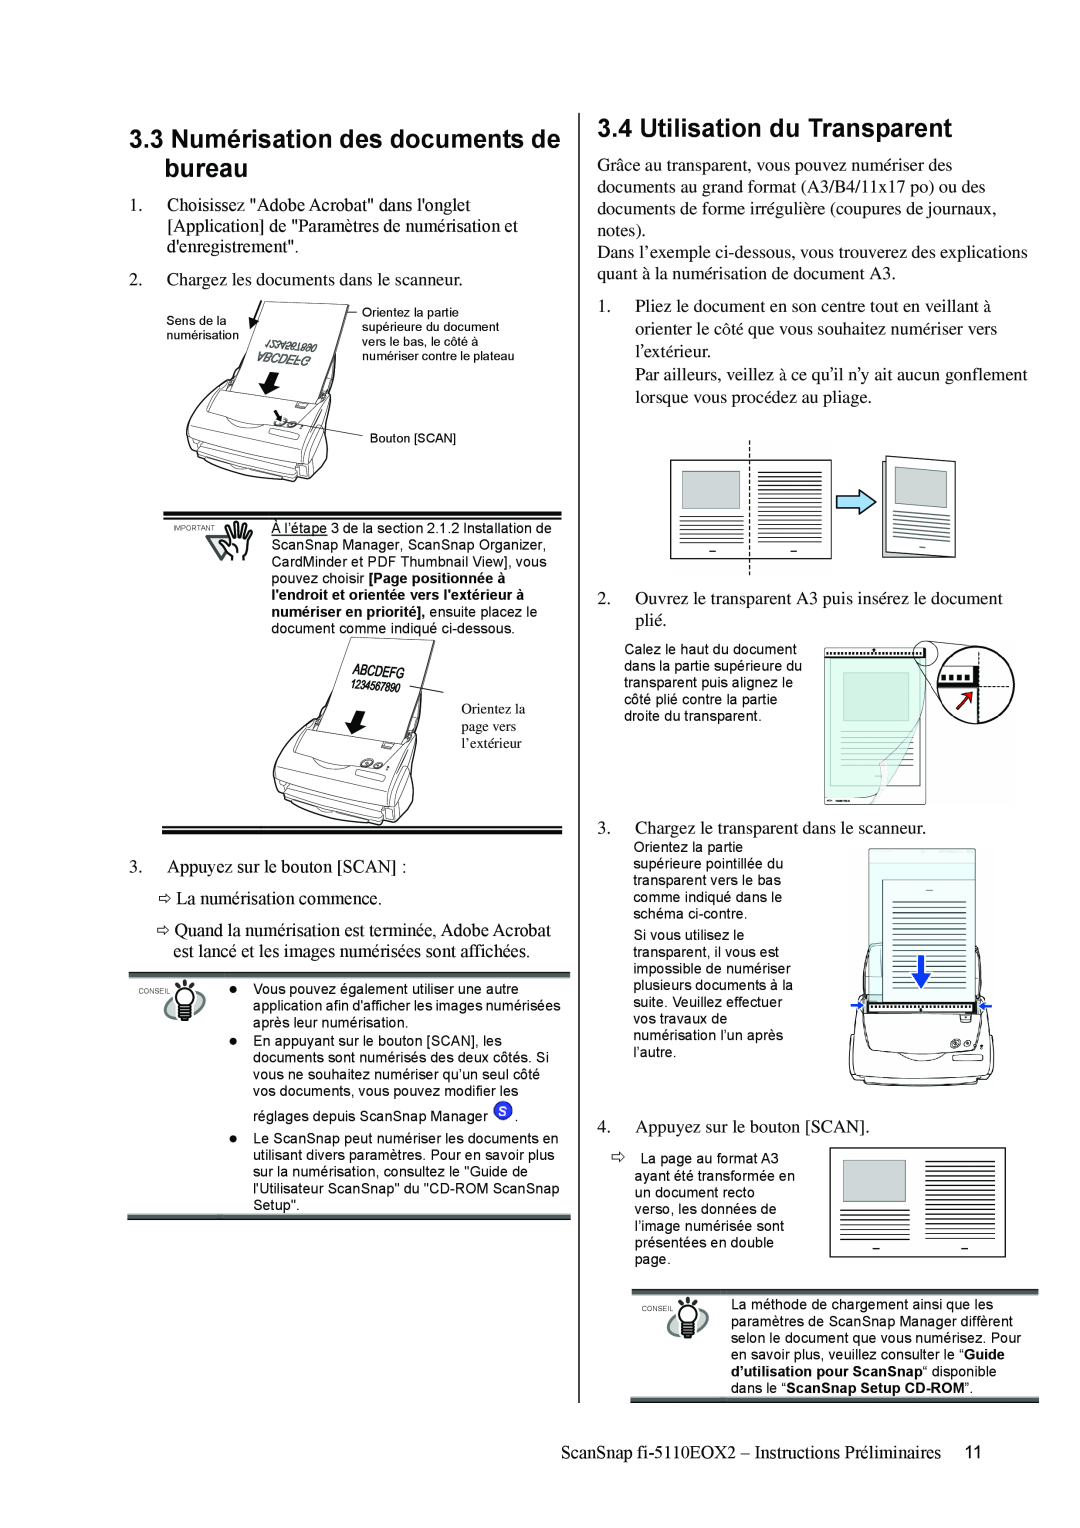 Fujitsu fi-5110EOX2 3.3 Numérisation des documents de bureau, Utilisation du Transparent, dans le “ScanSnap Setup CD-ROM ” 